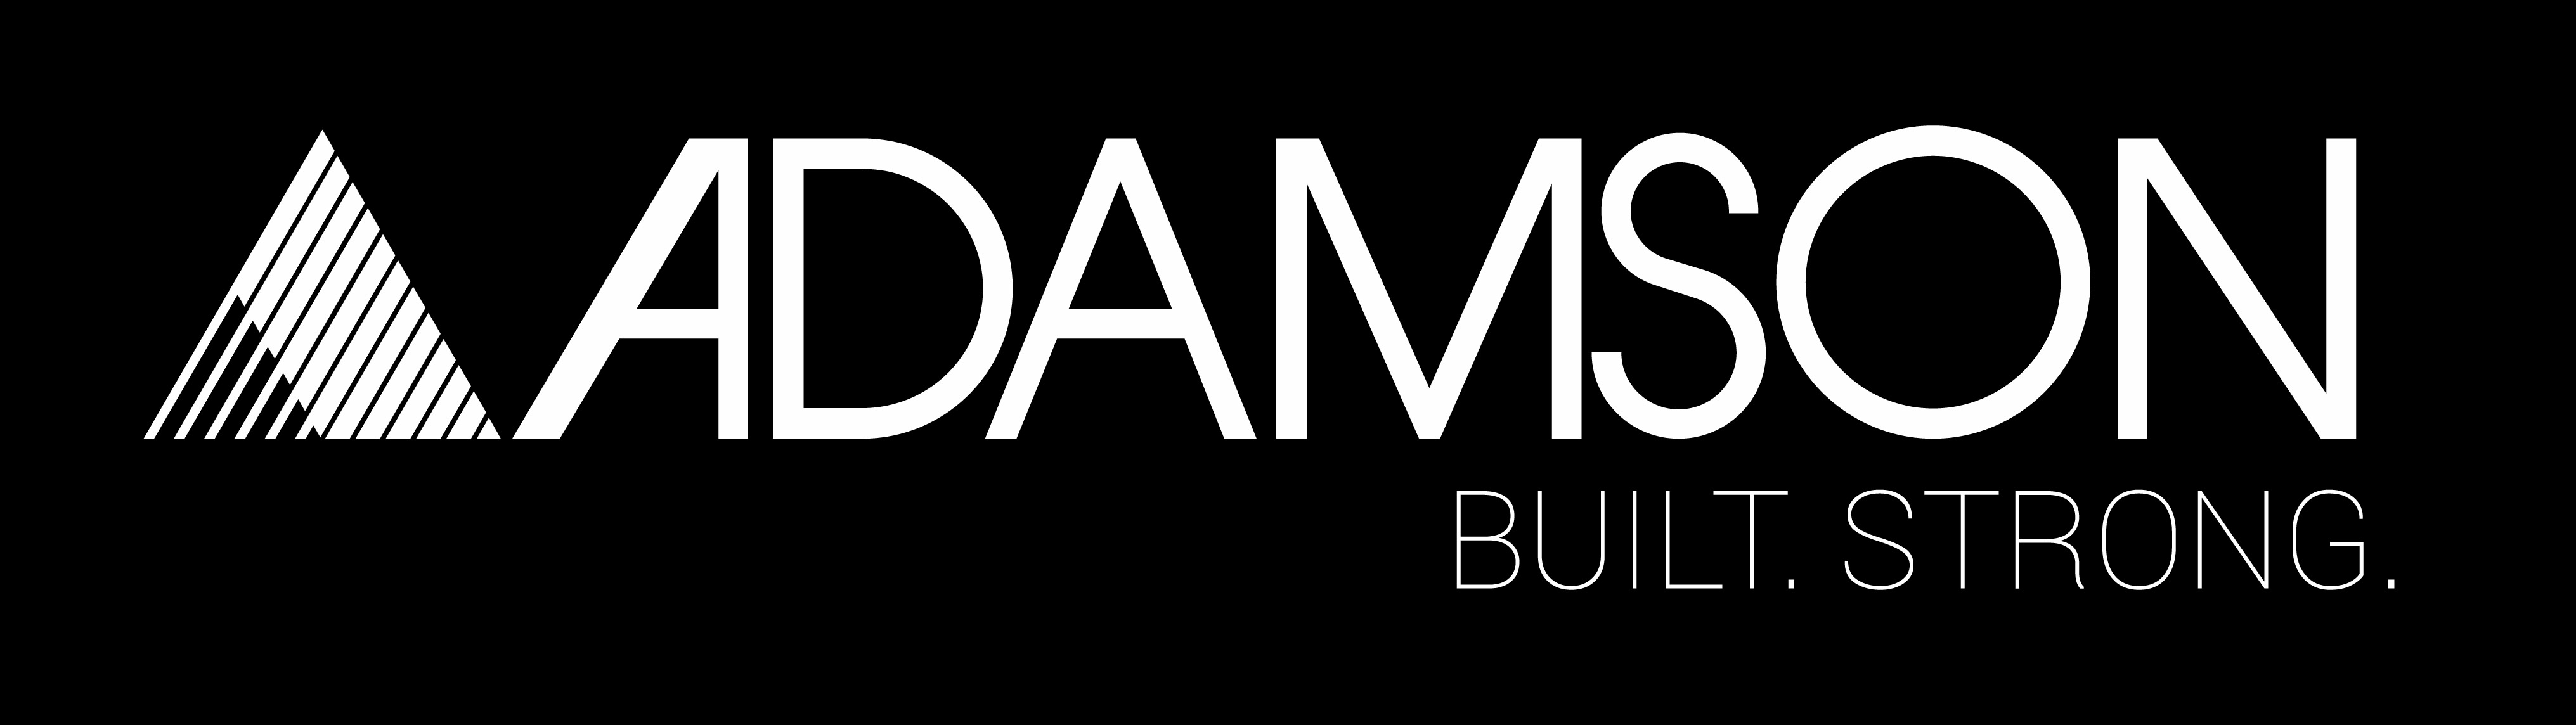 Adamson_Systems_logo_big